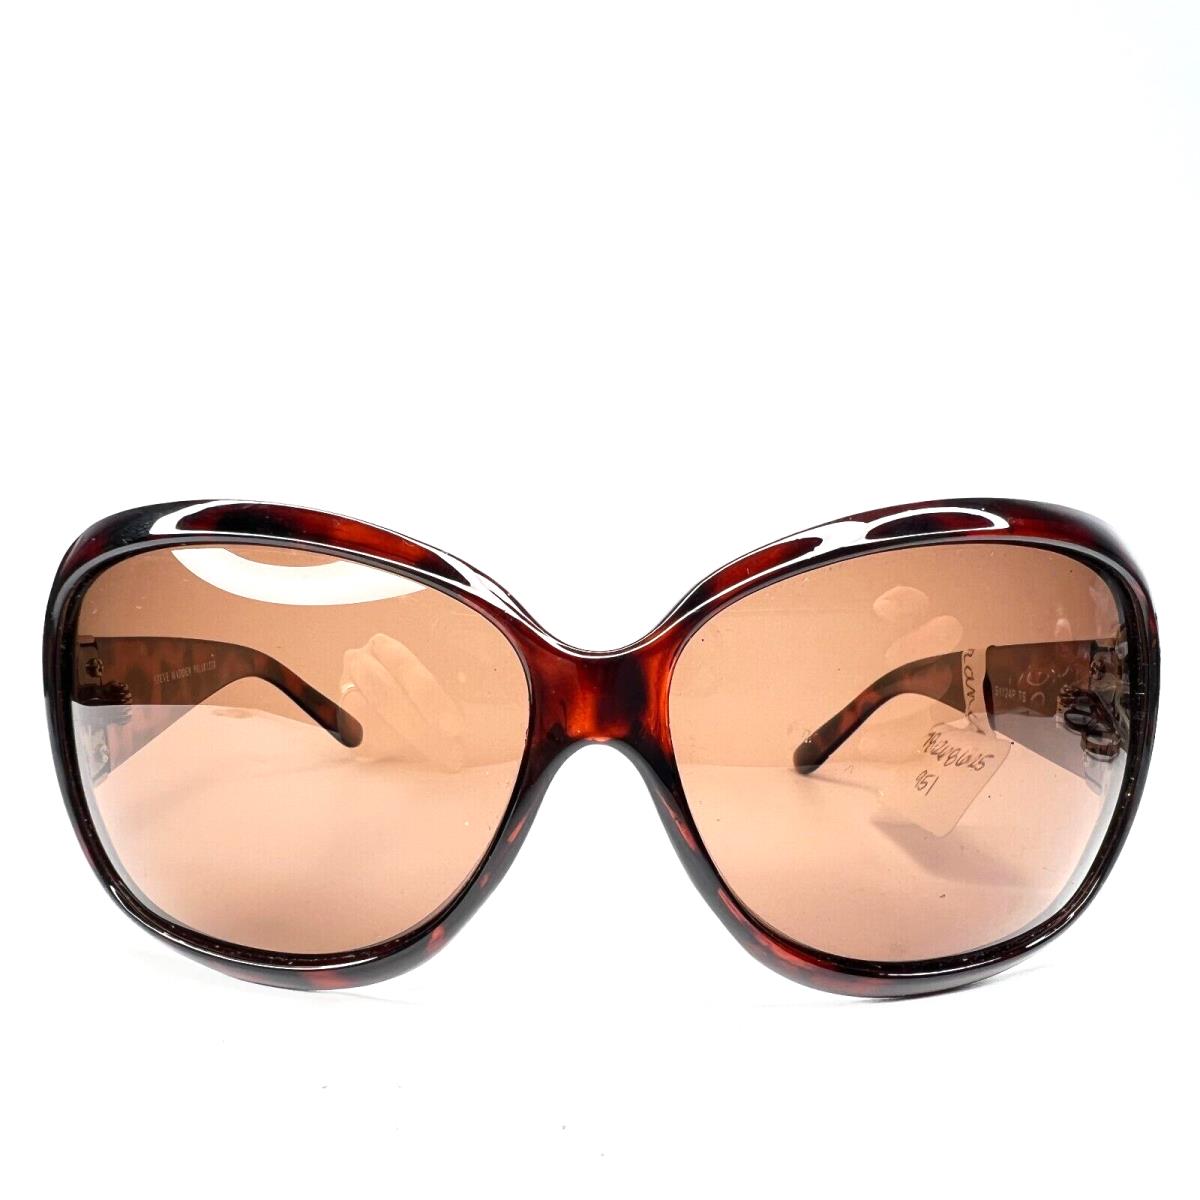 Steve Madden Sunglasses S1124P TS Brown Tortoise Oversized Butterfly Frames